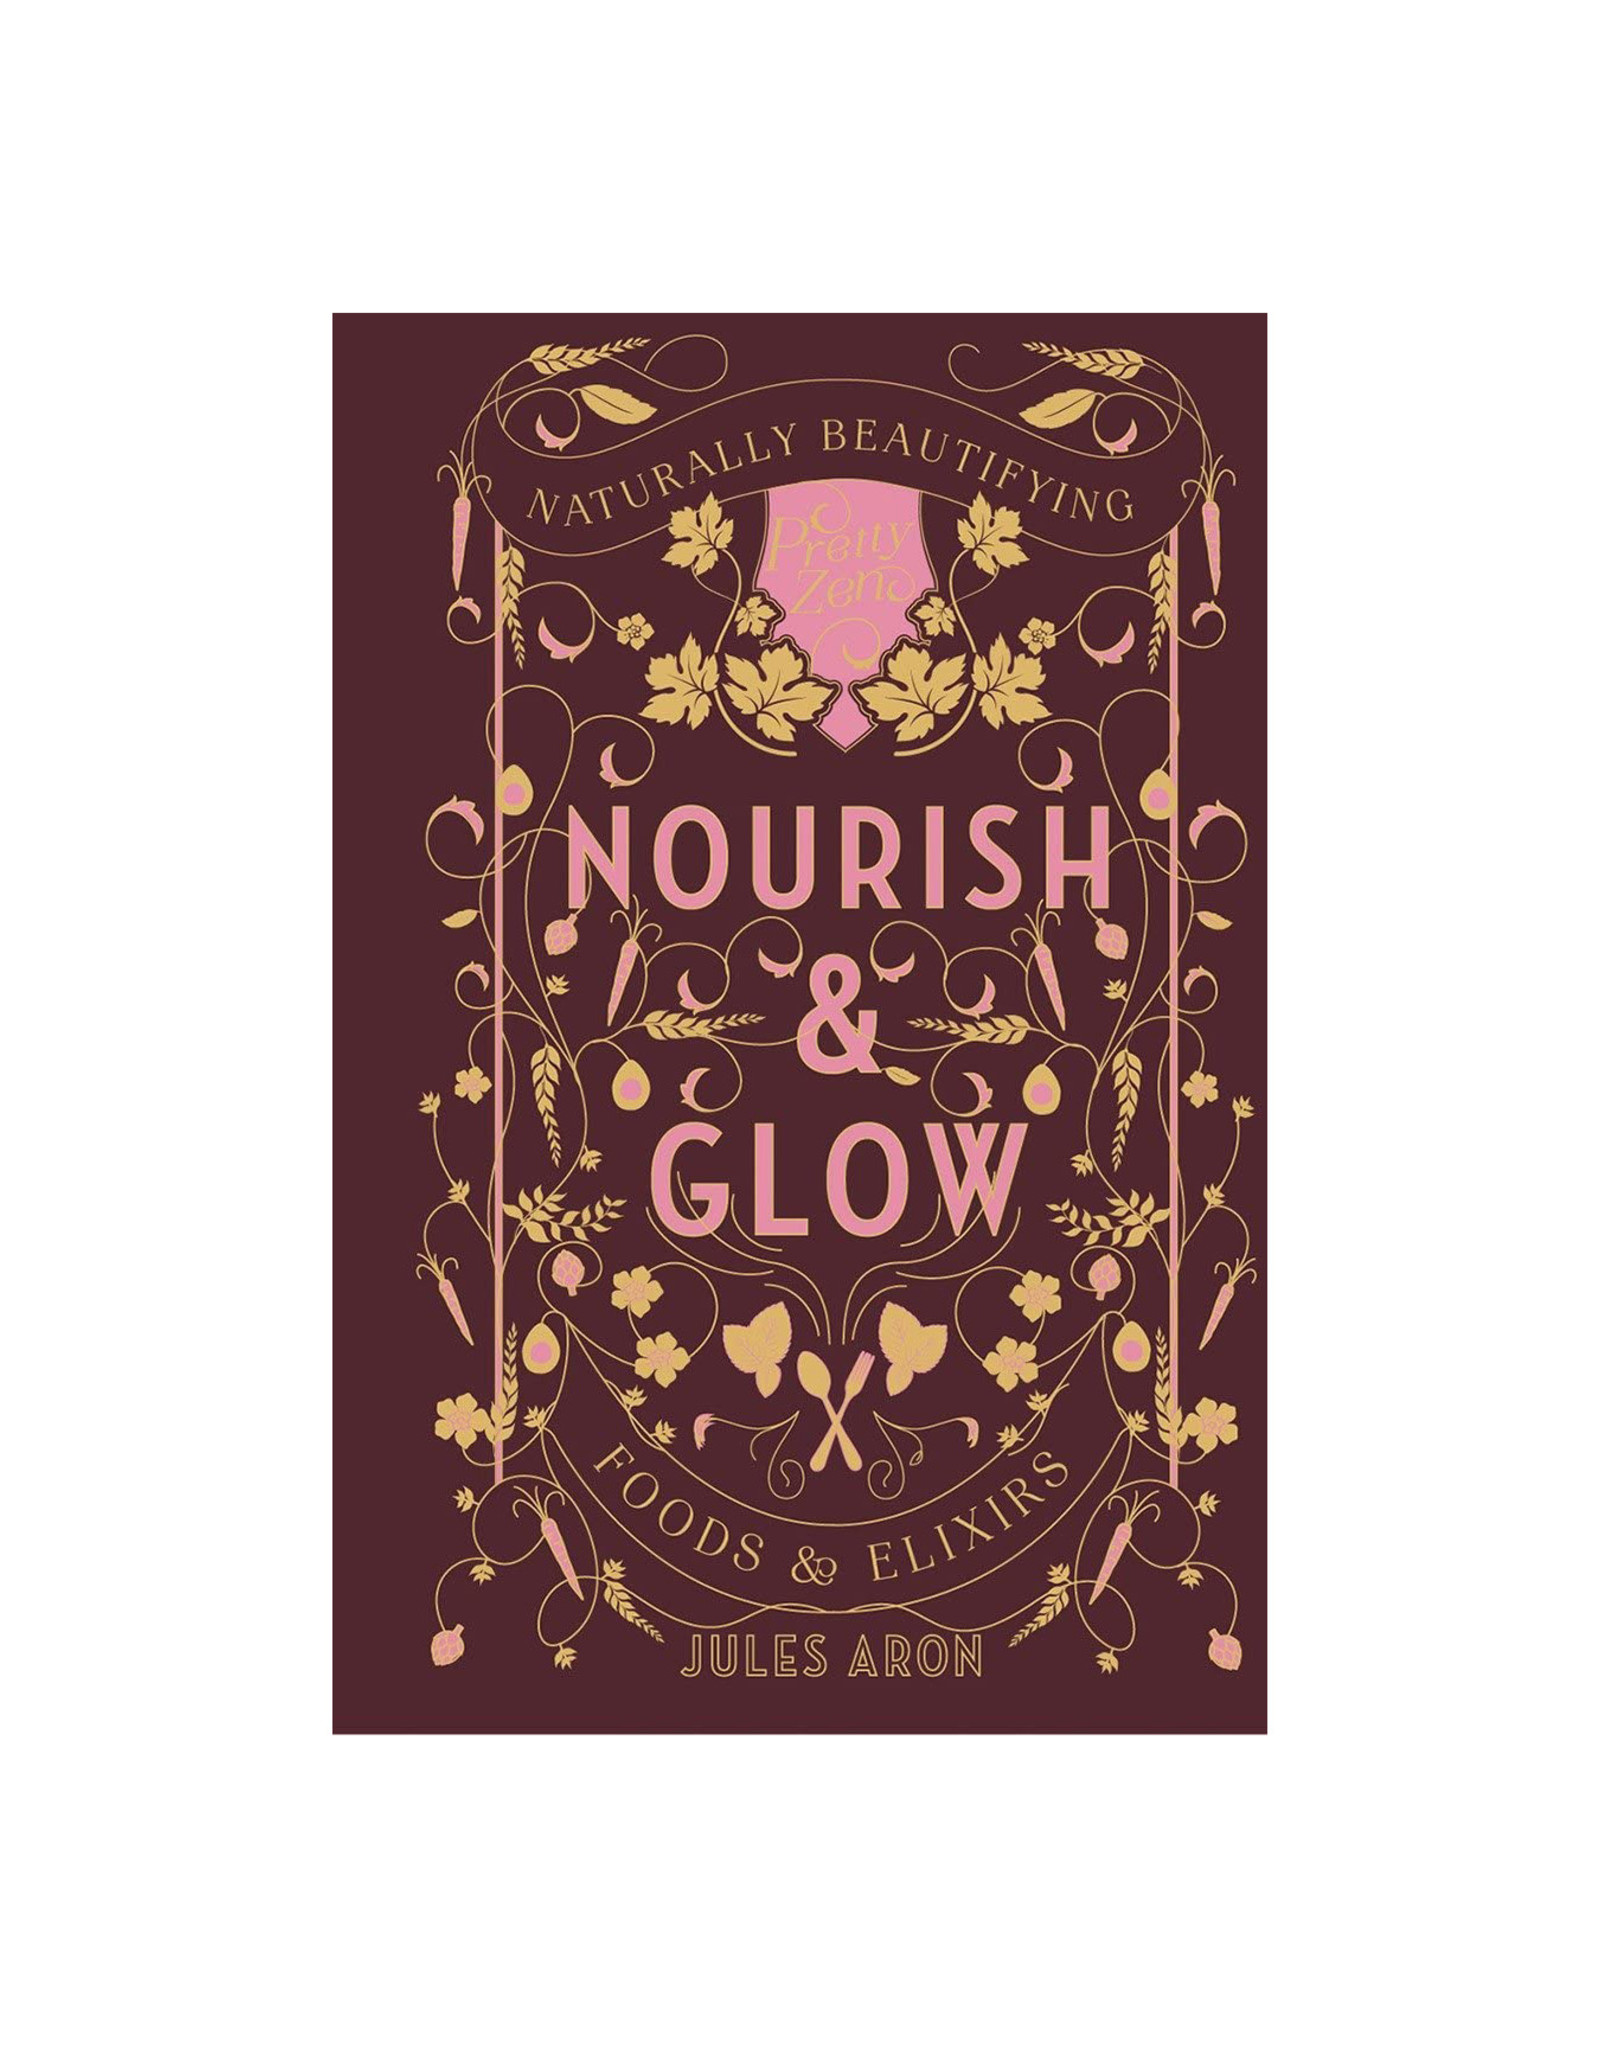 Nourish & Glow